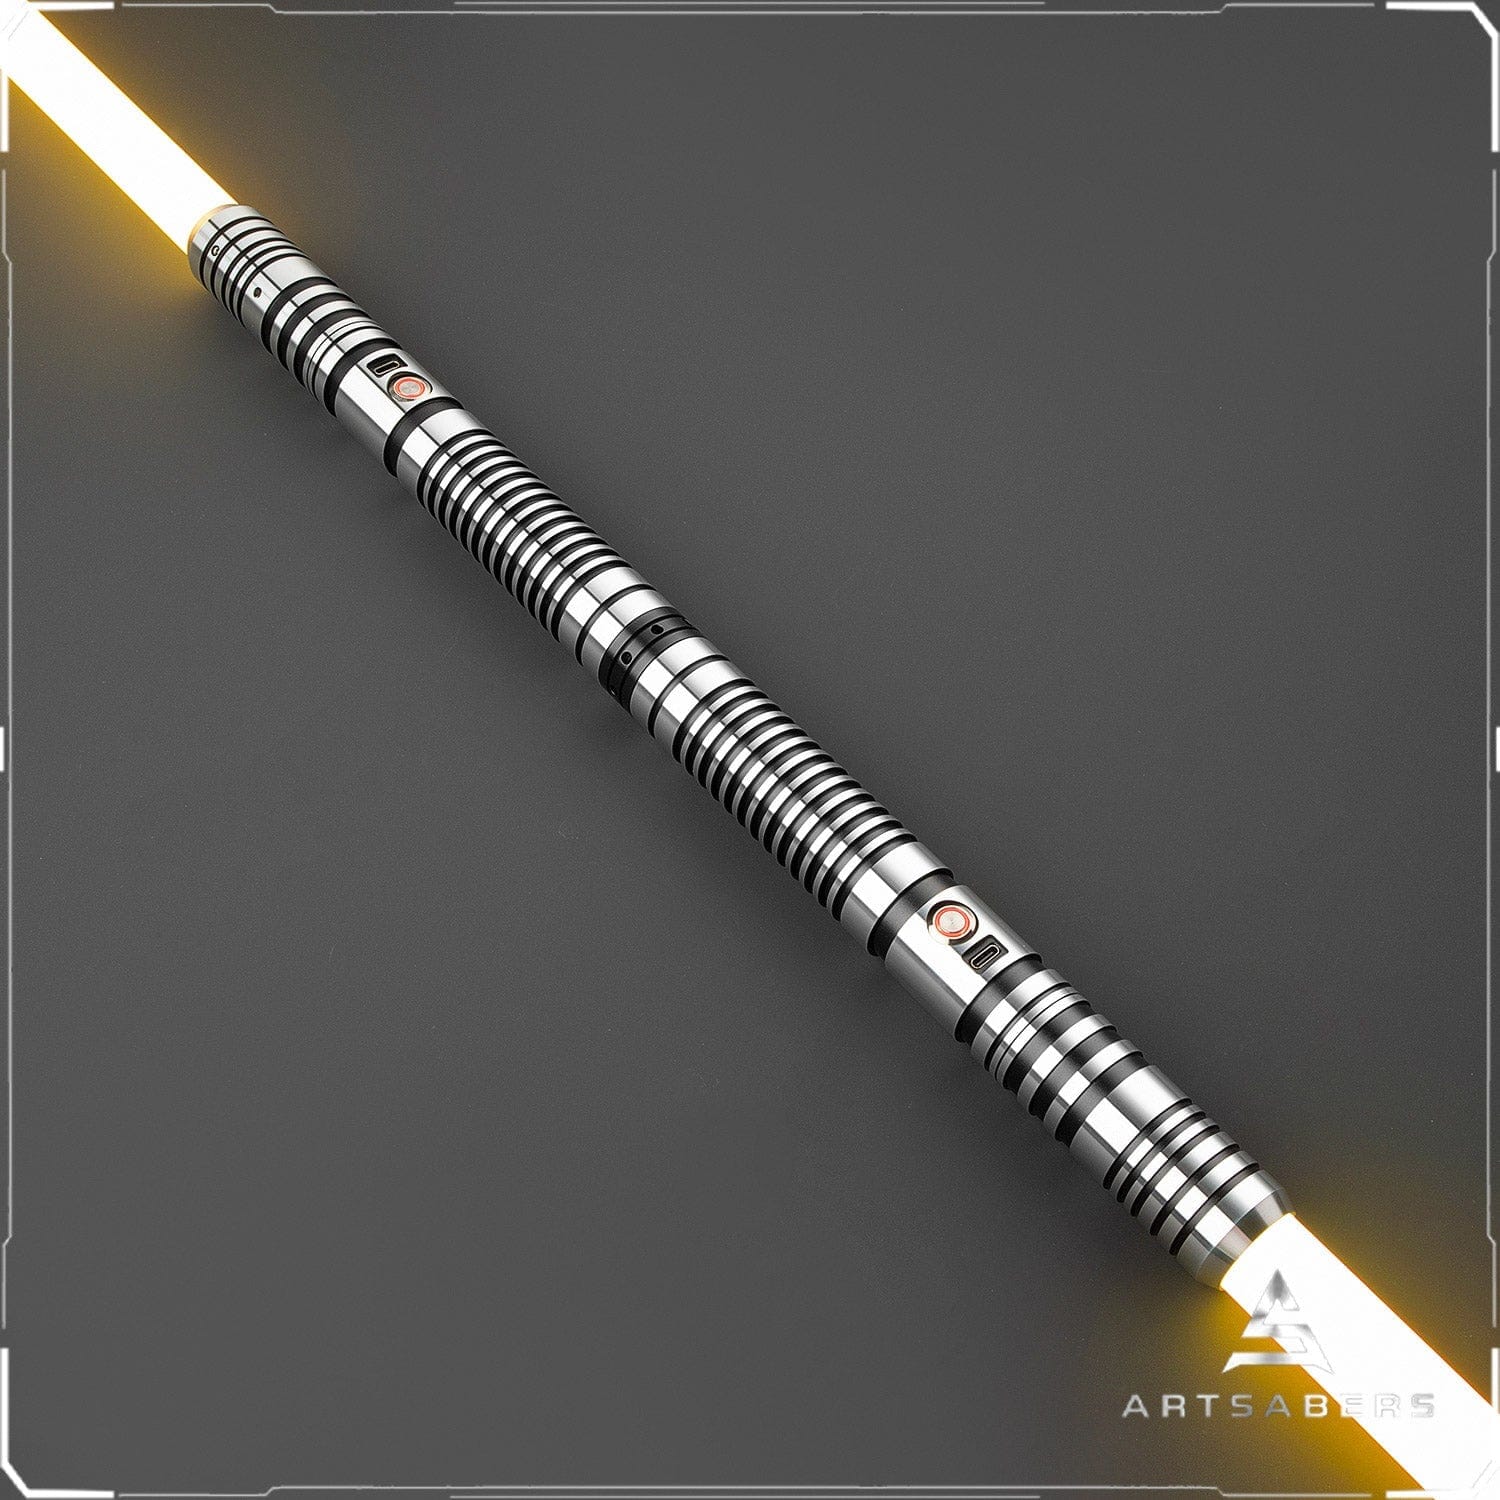 Black ARRIO V2 Double Bladed saber Star Wars saber ARTSABERS